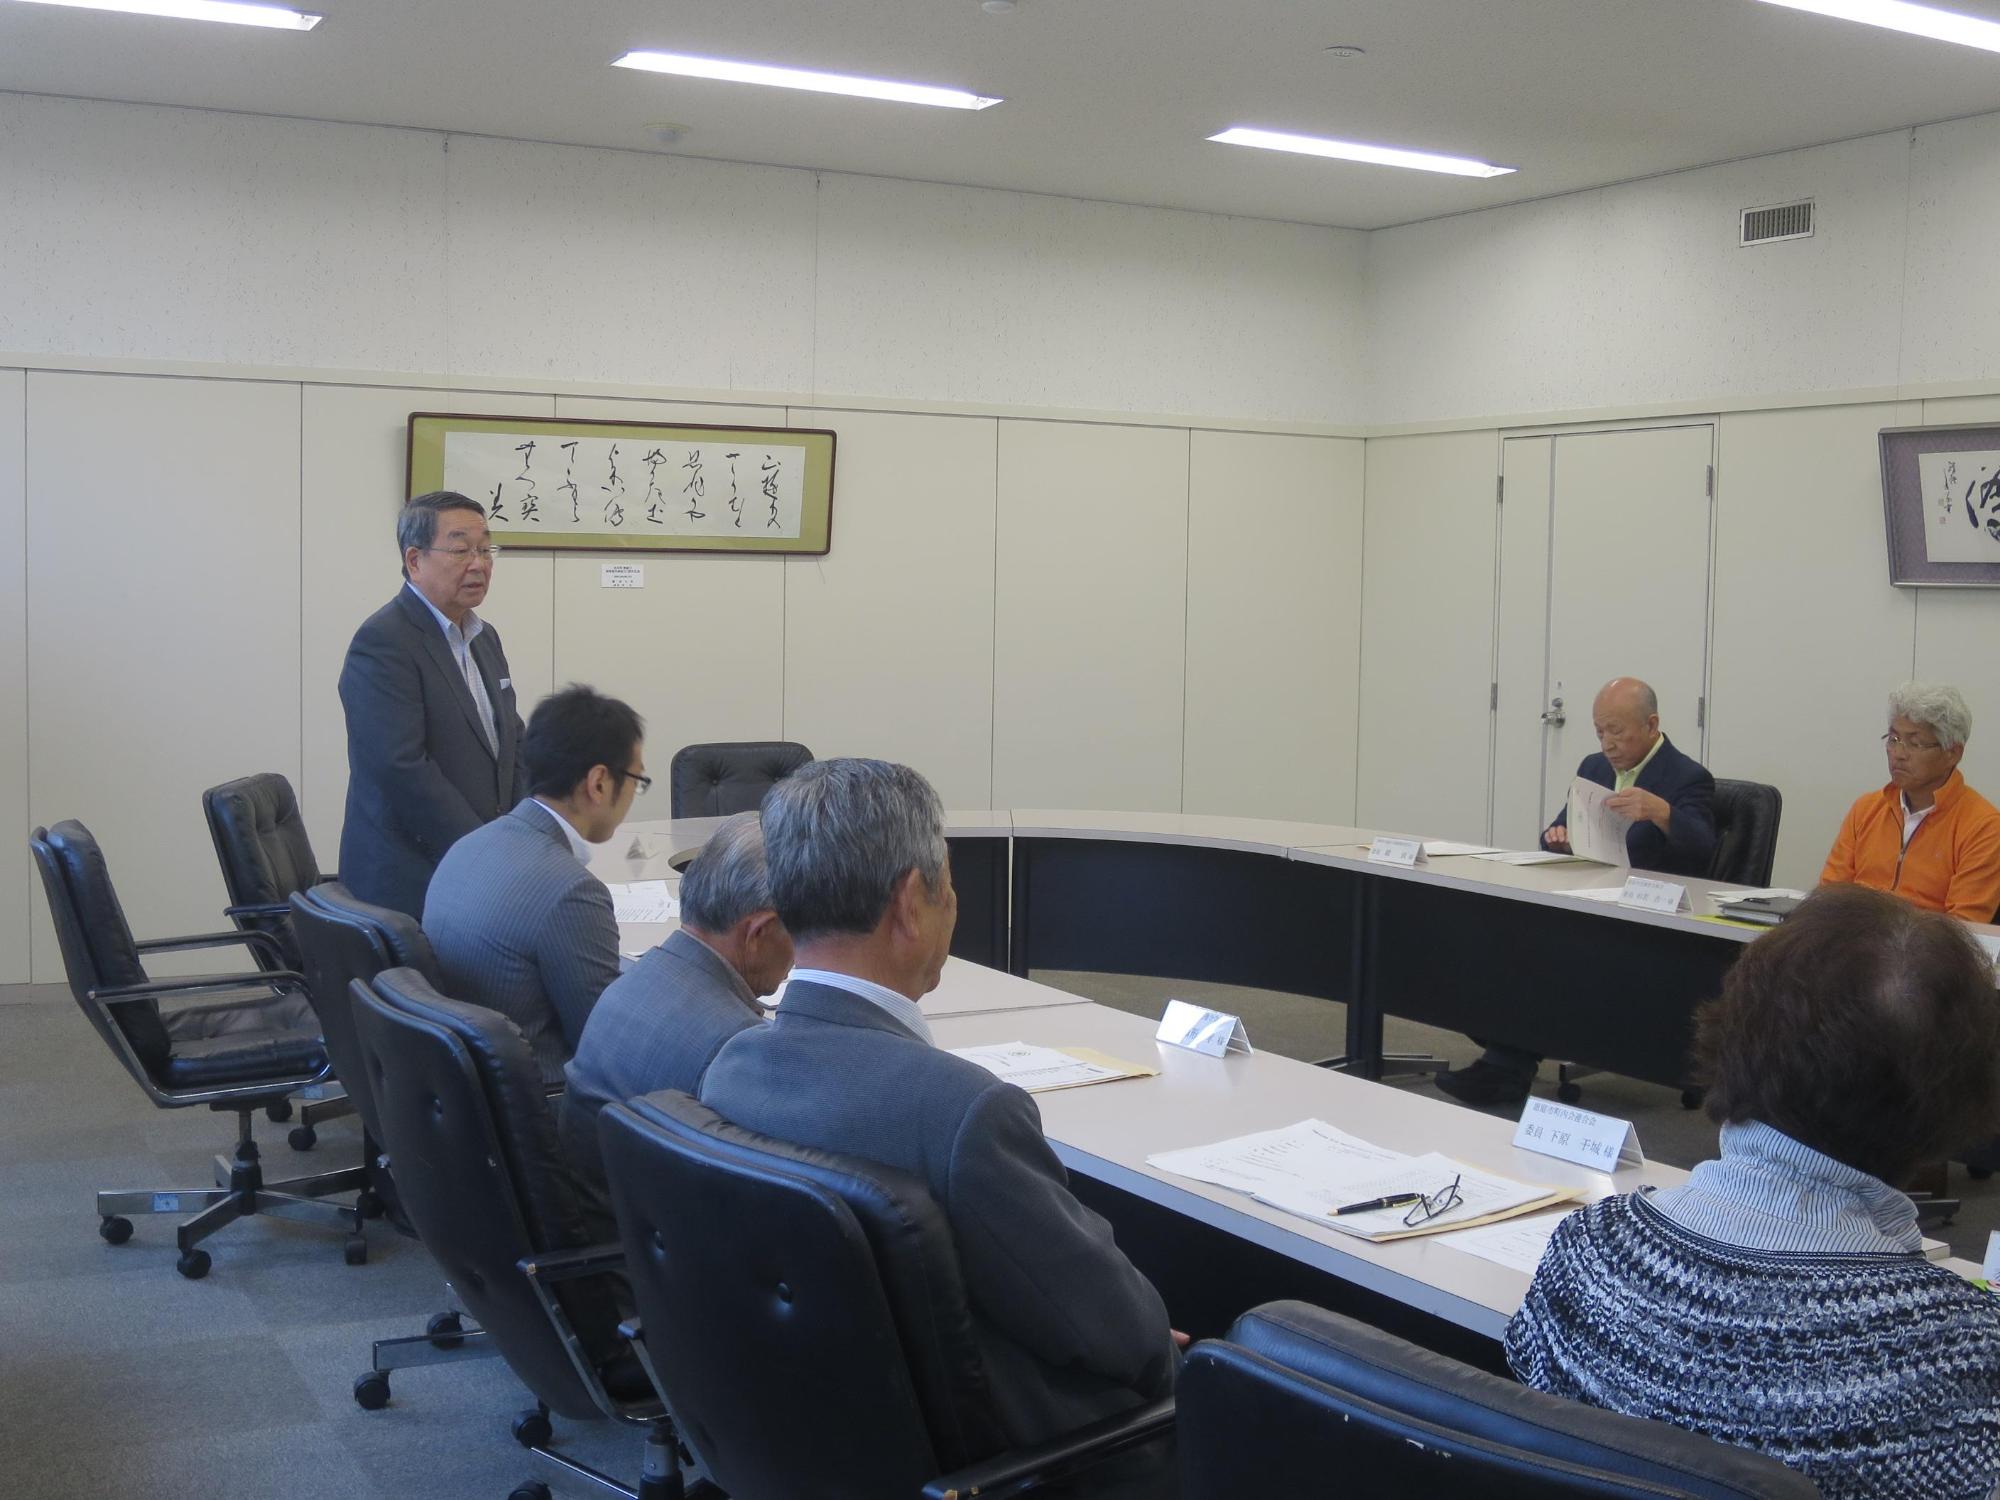 「恵庭市安全で安心なまちづくり実行委員会」にて挨拶をしている原田市長の写真